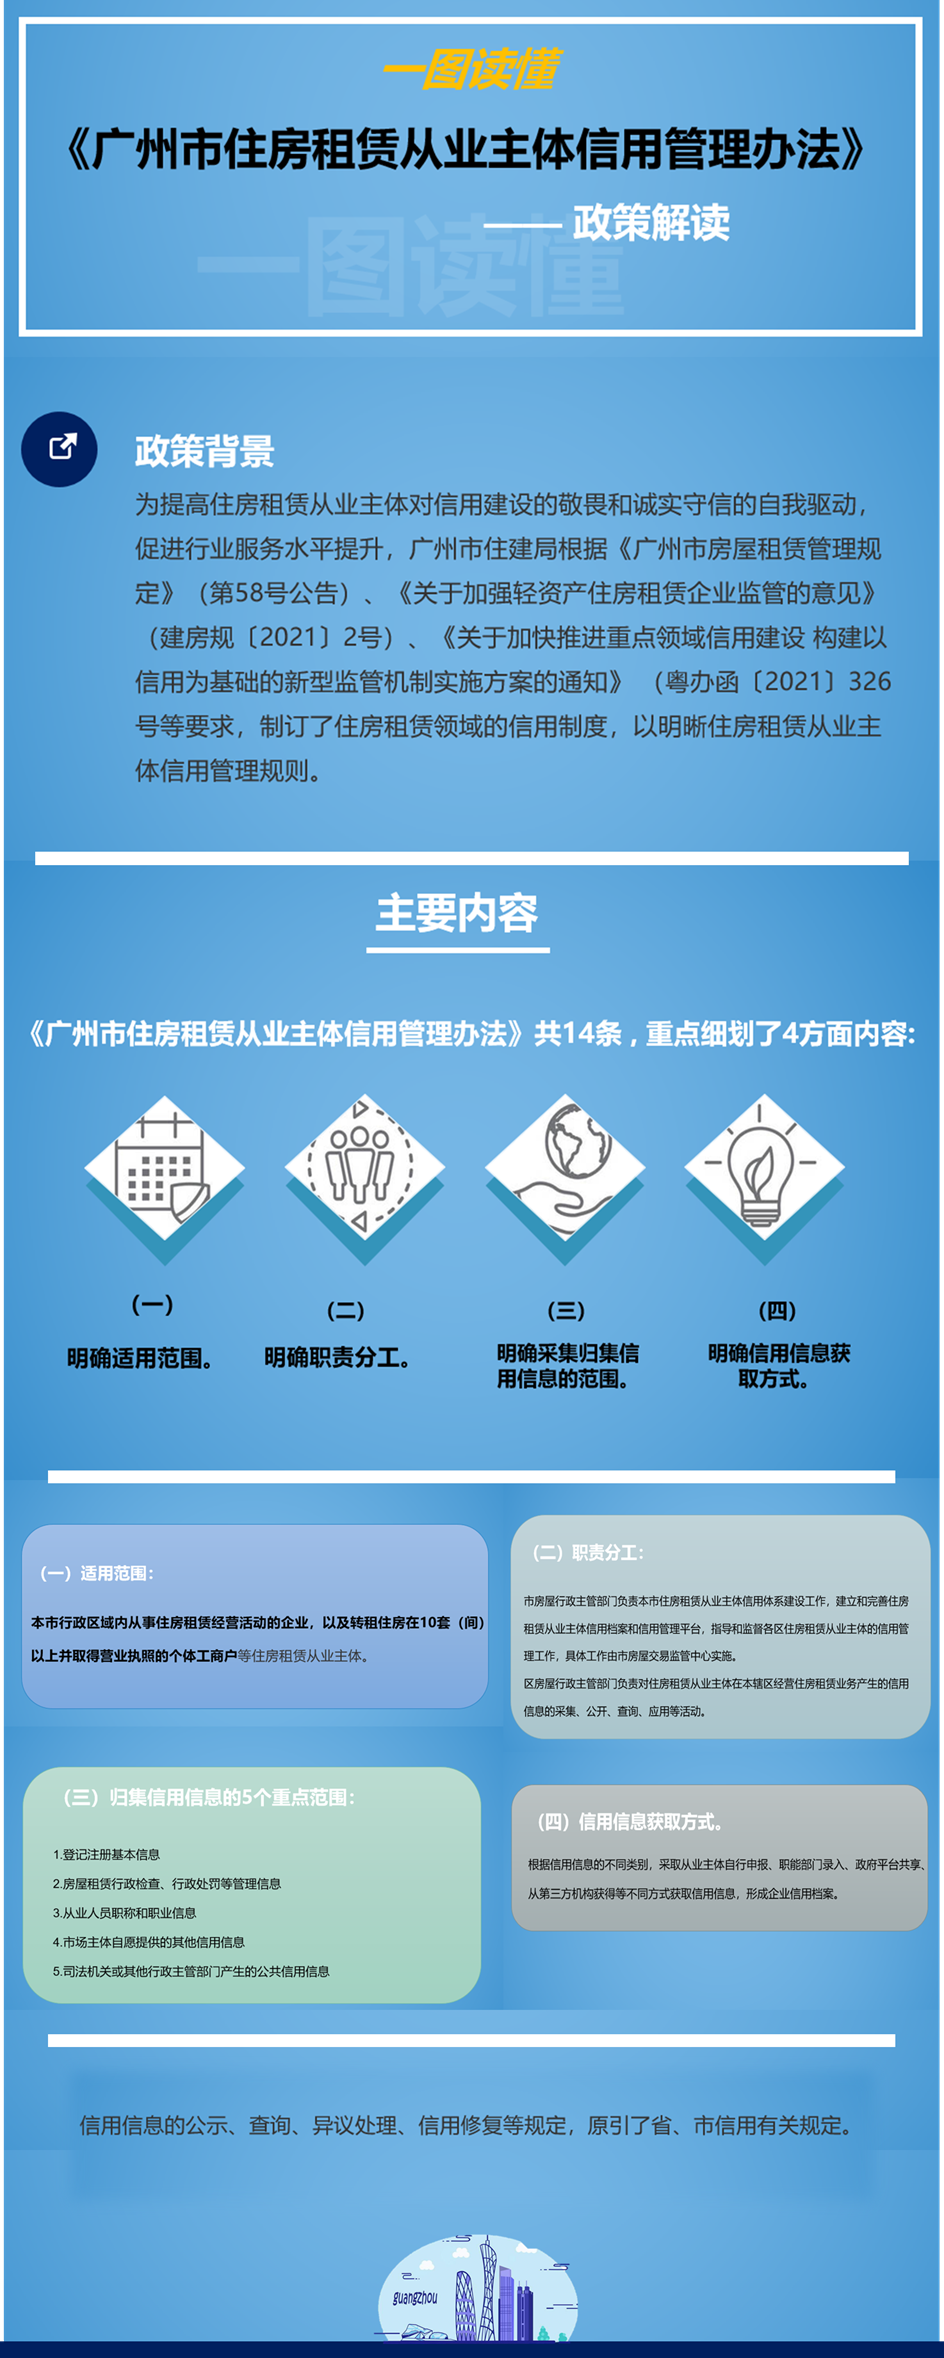 一图读懂《广州市住房租赁从业主体信用管理办法》.png